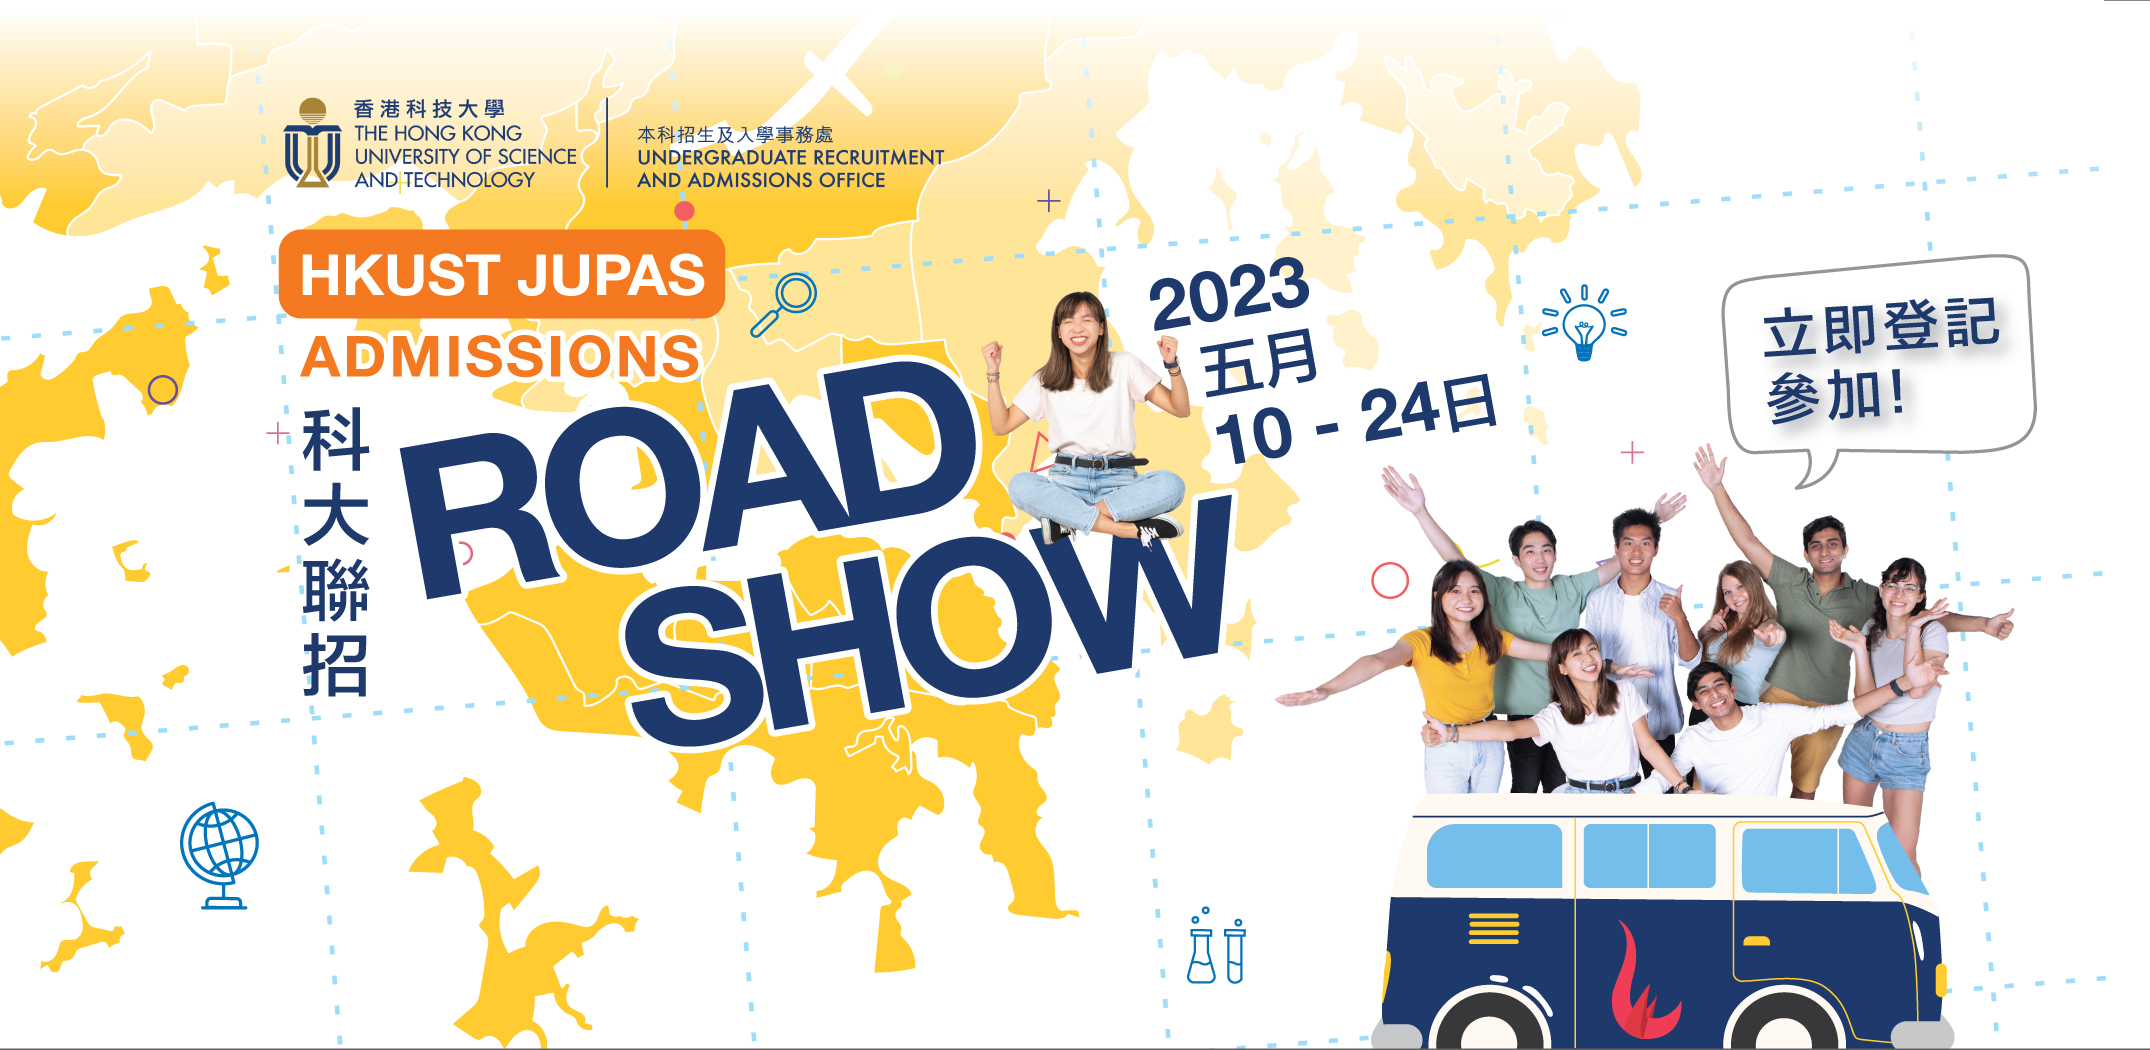 HKUST JUPAS Admission Roadshow 2023